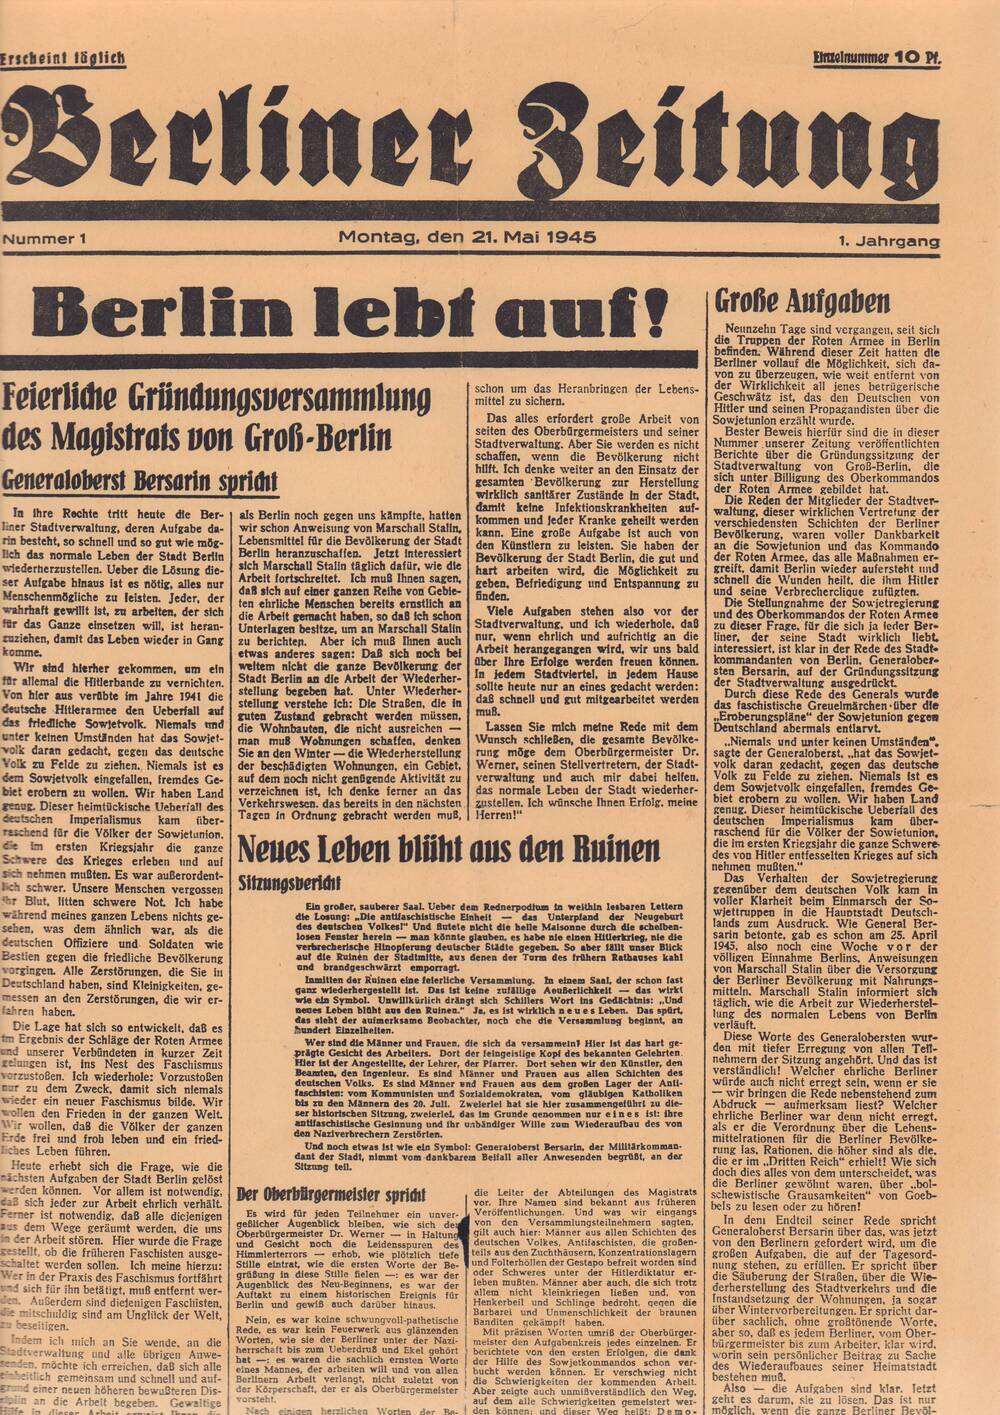 Газета Berliner zeitung